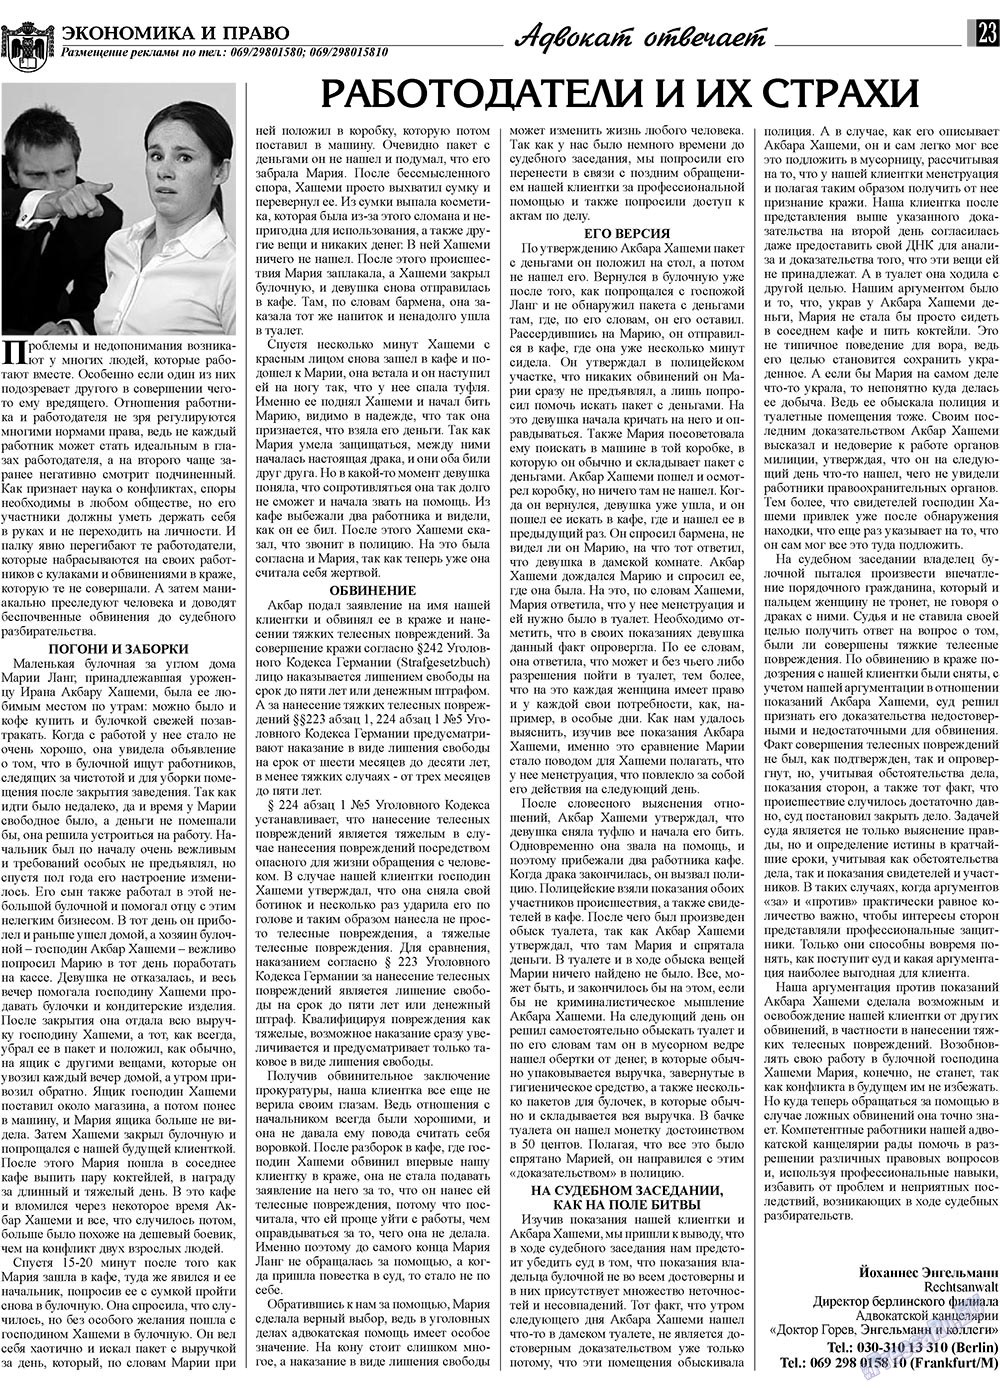 Экономика и право, газета. 2009 №5 стр.23